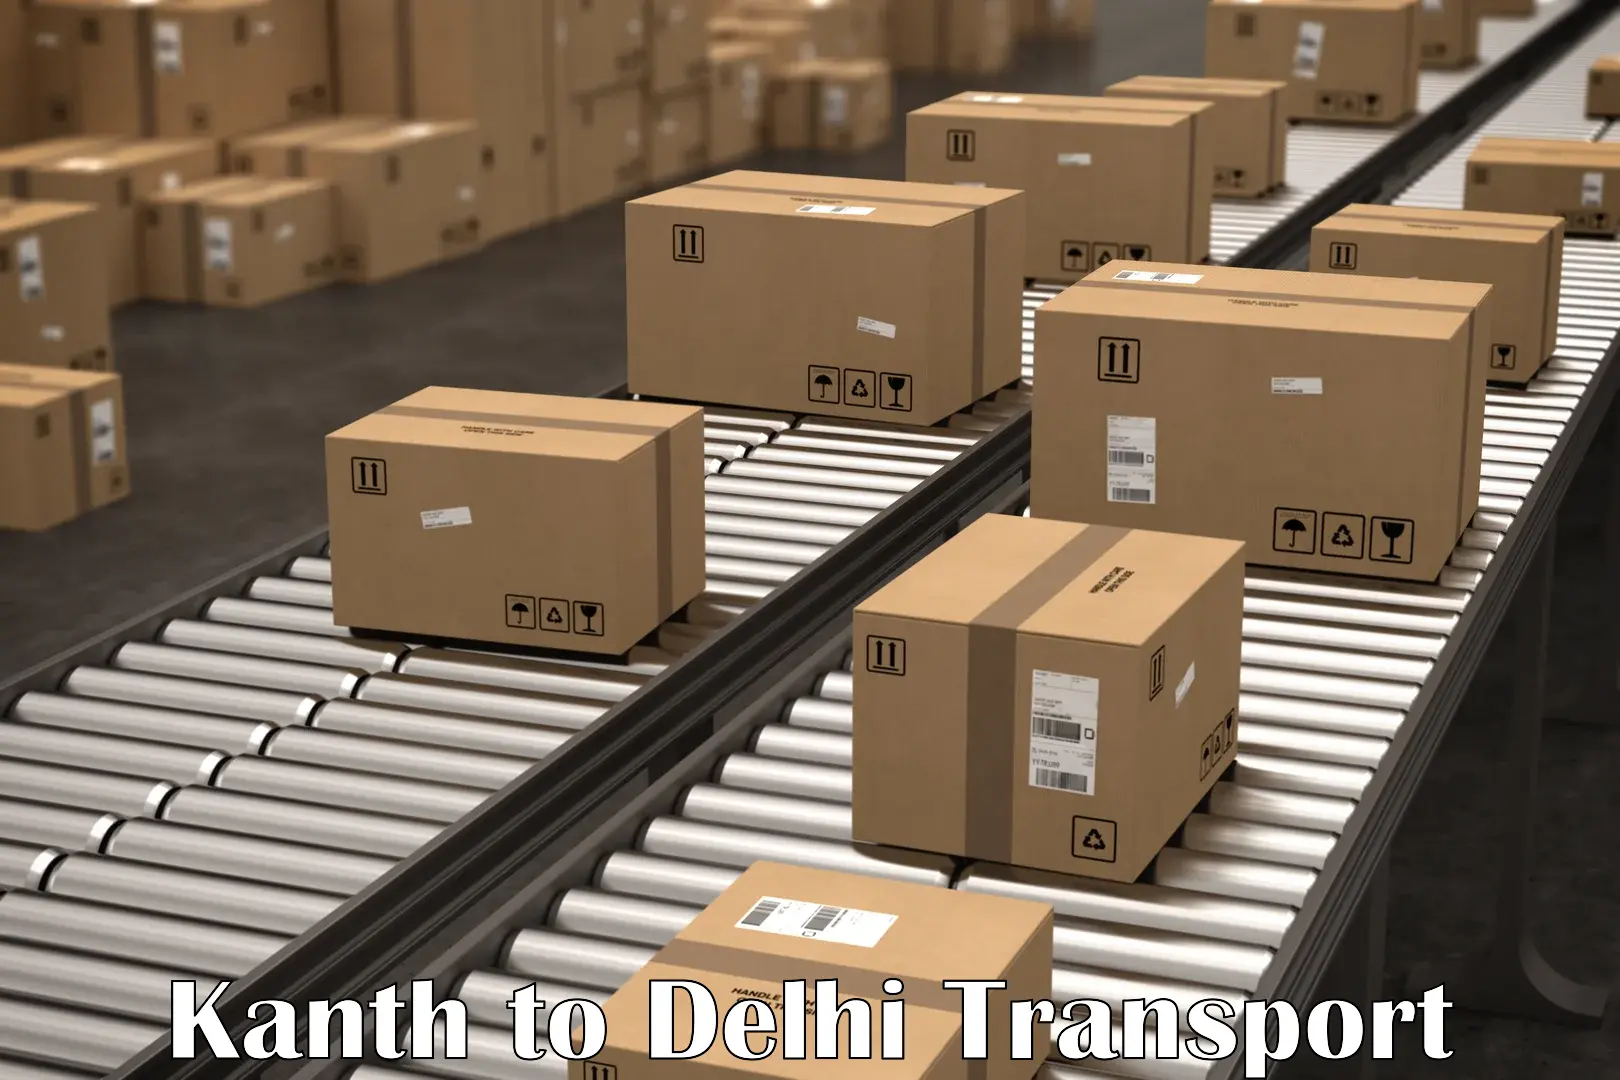 Parcel transport services Kanth to Delhi Technological University DTU